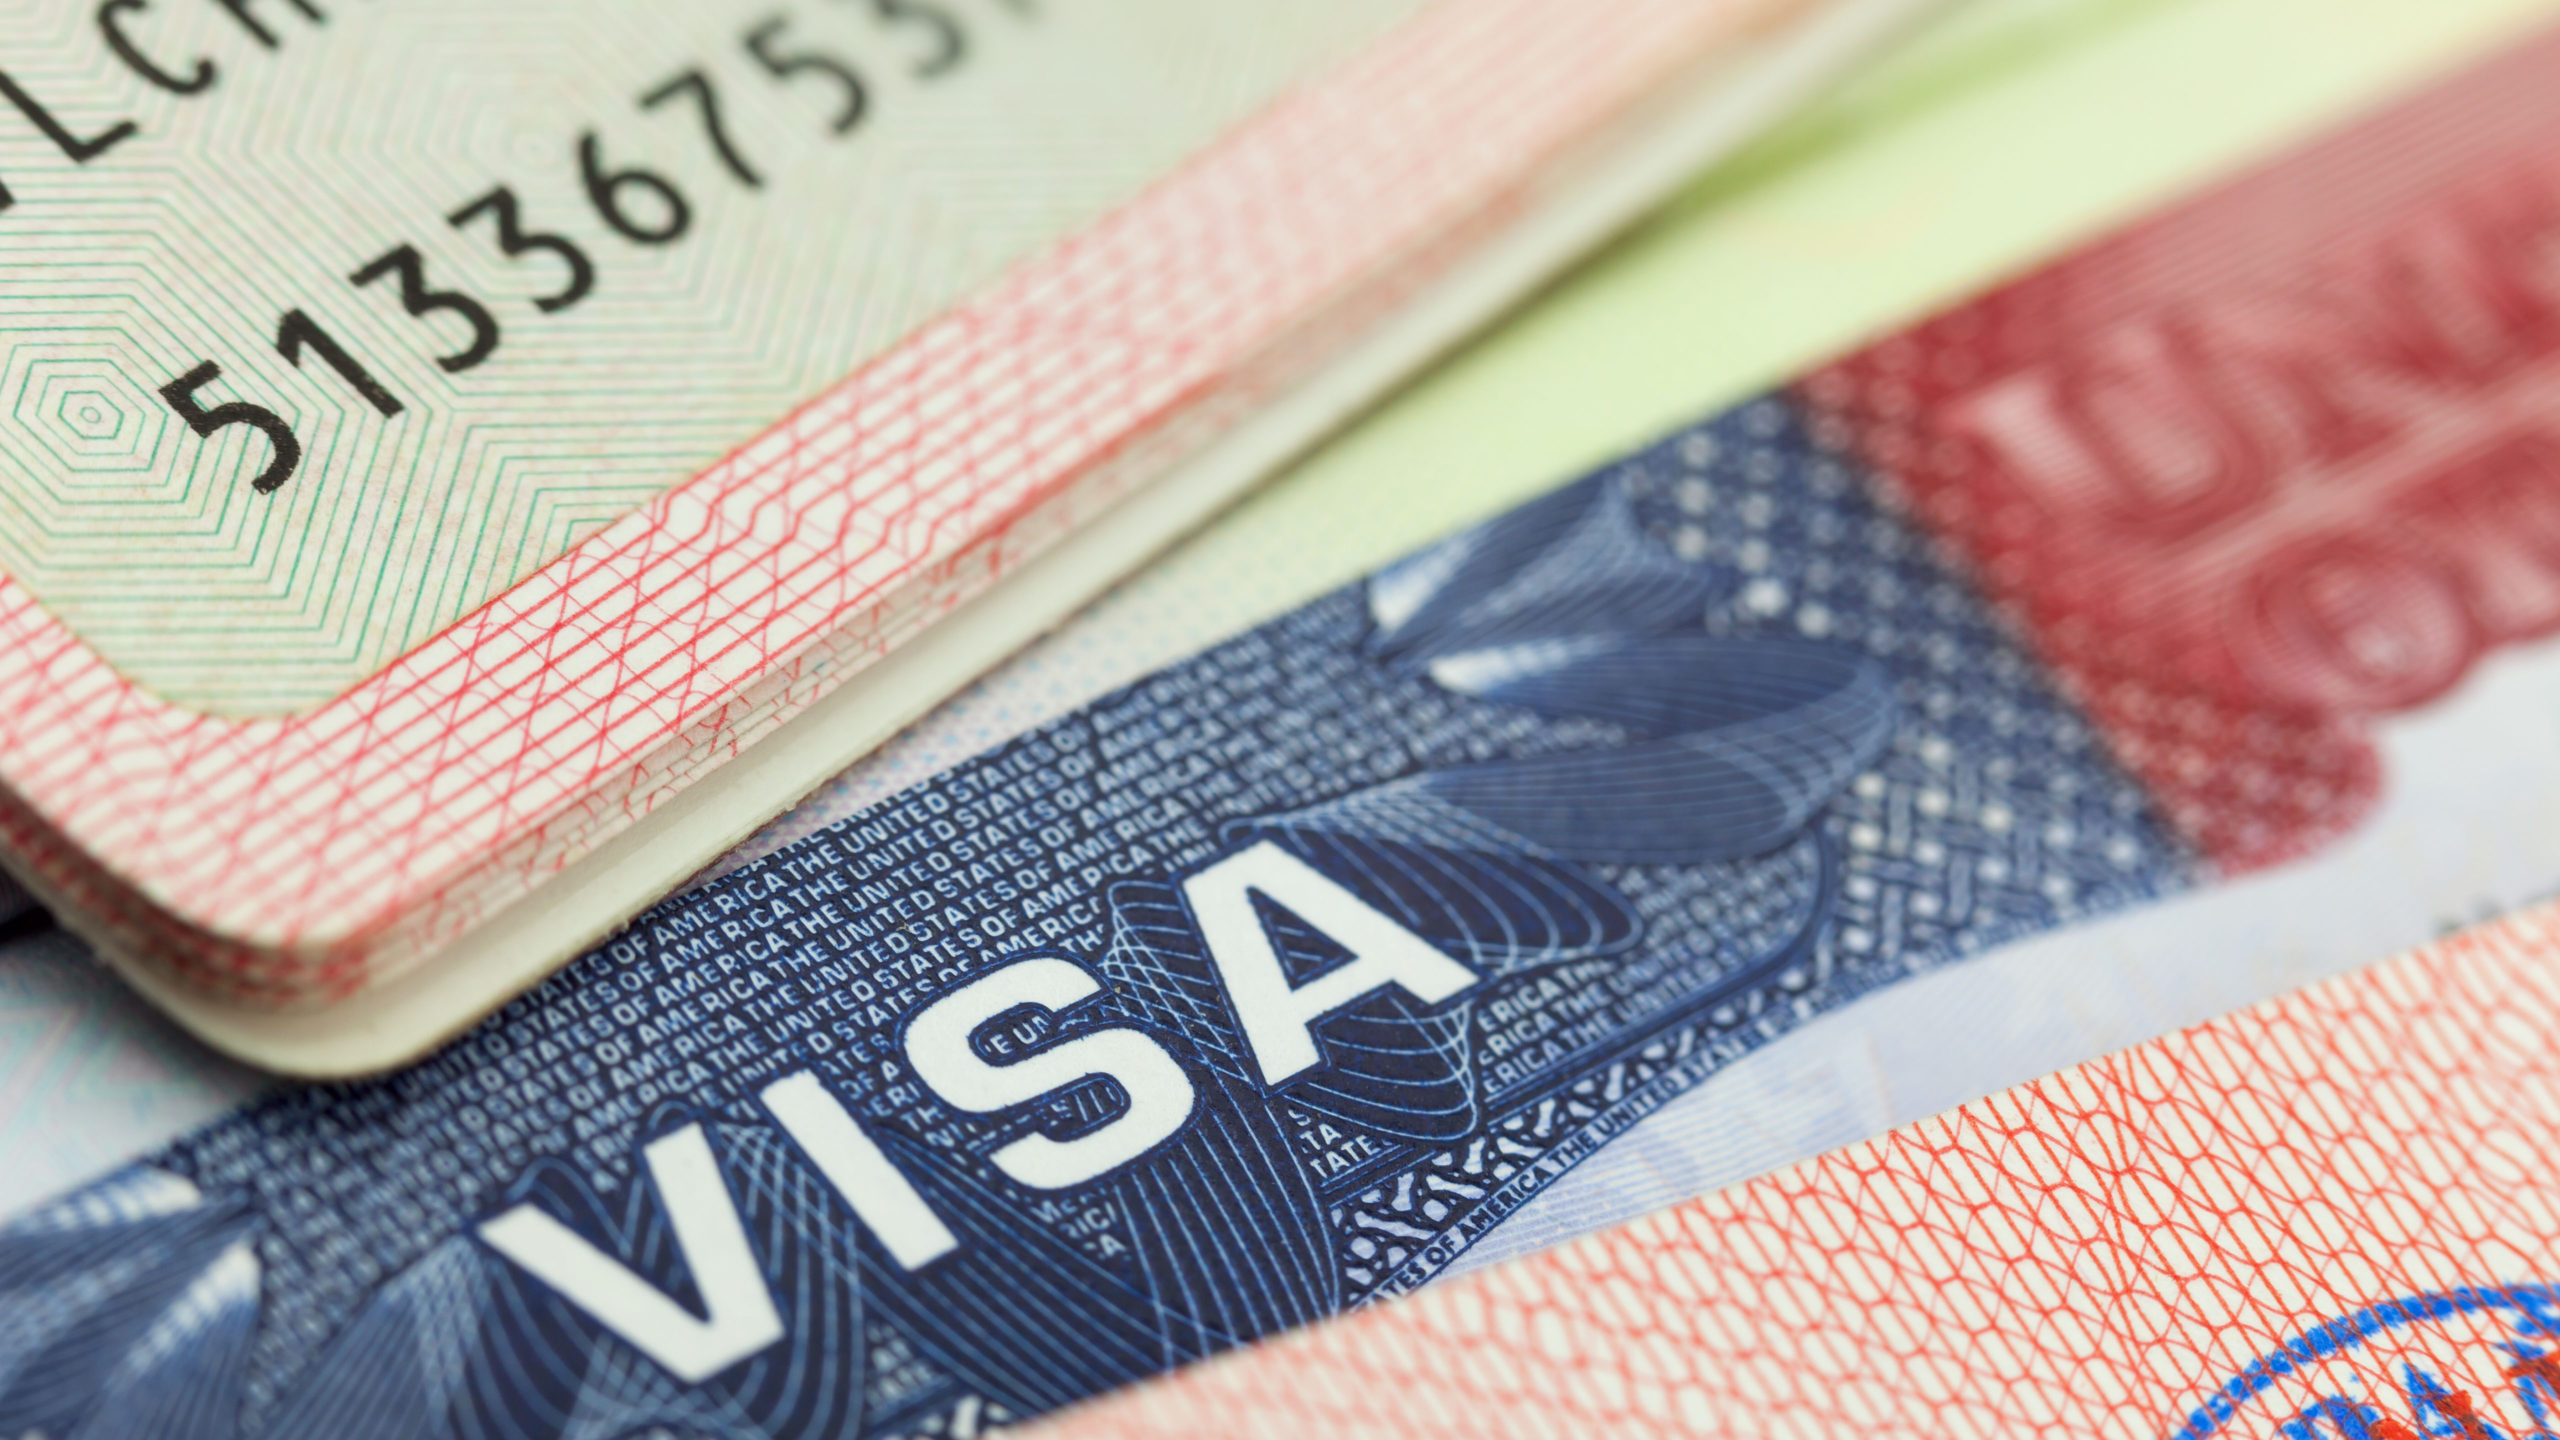 us travel docs passport status origination scan